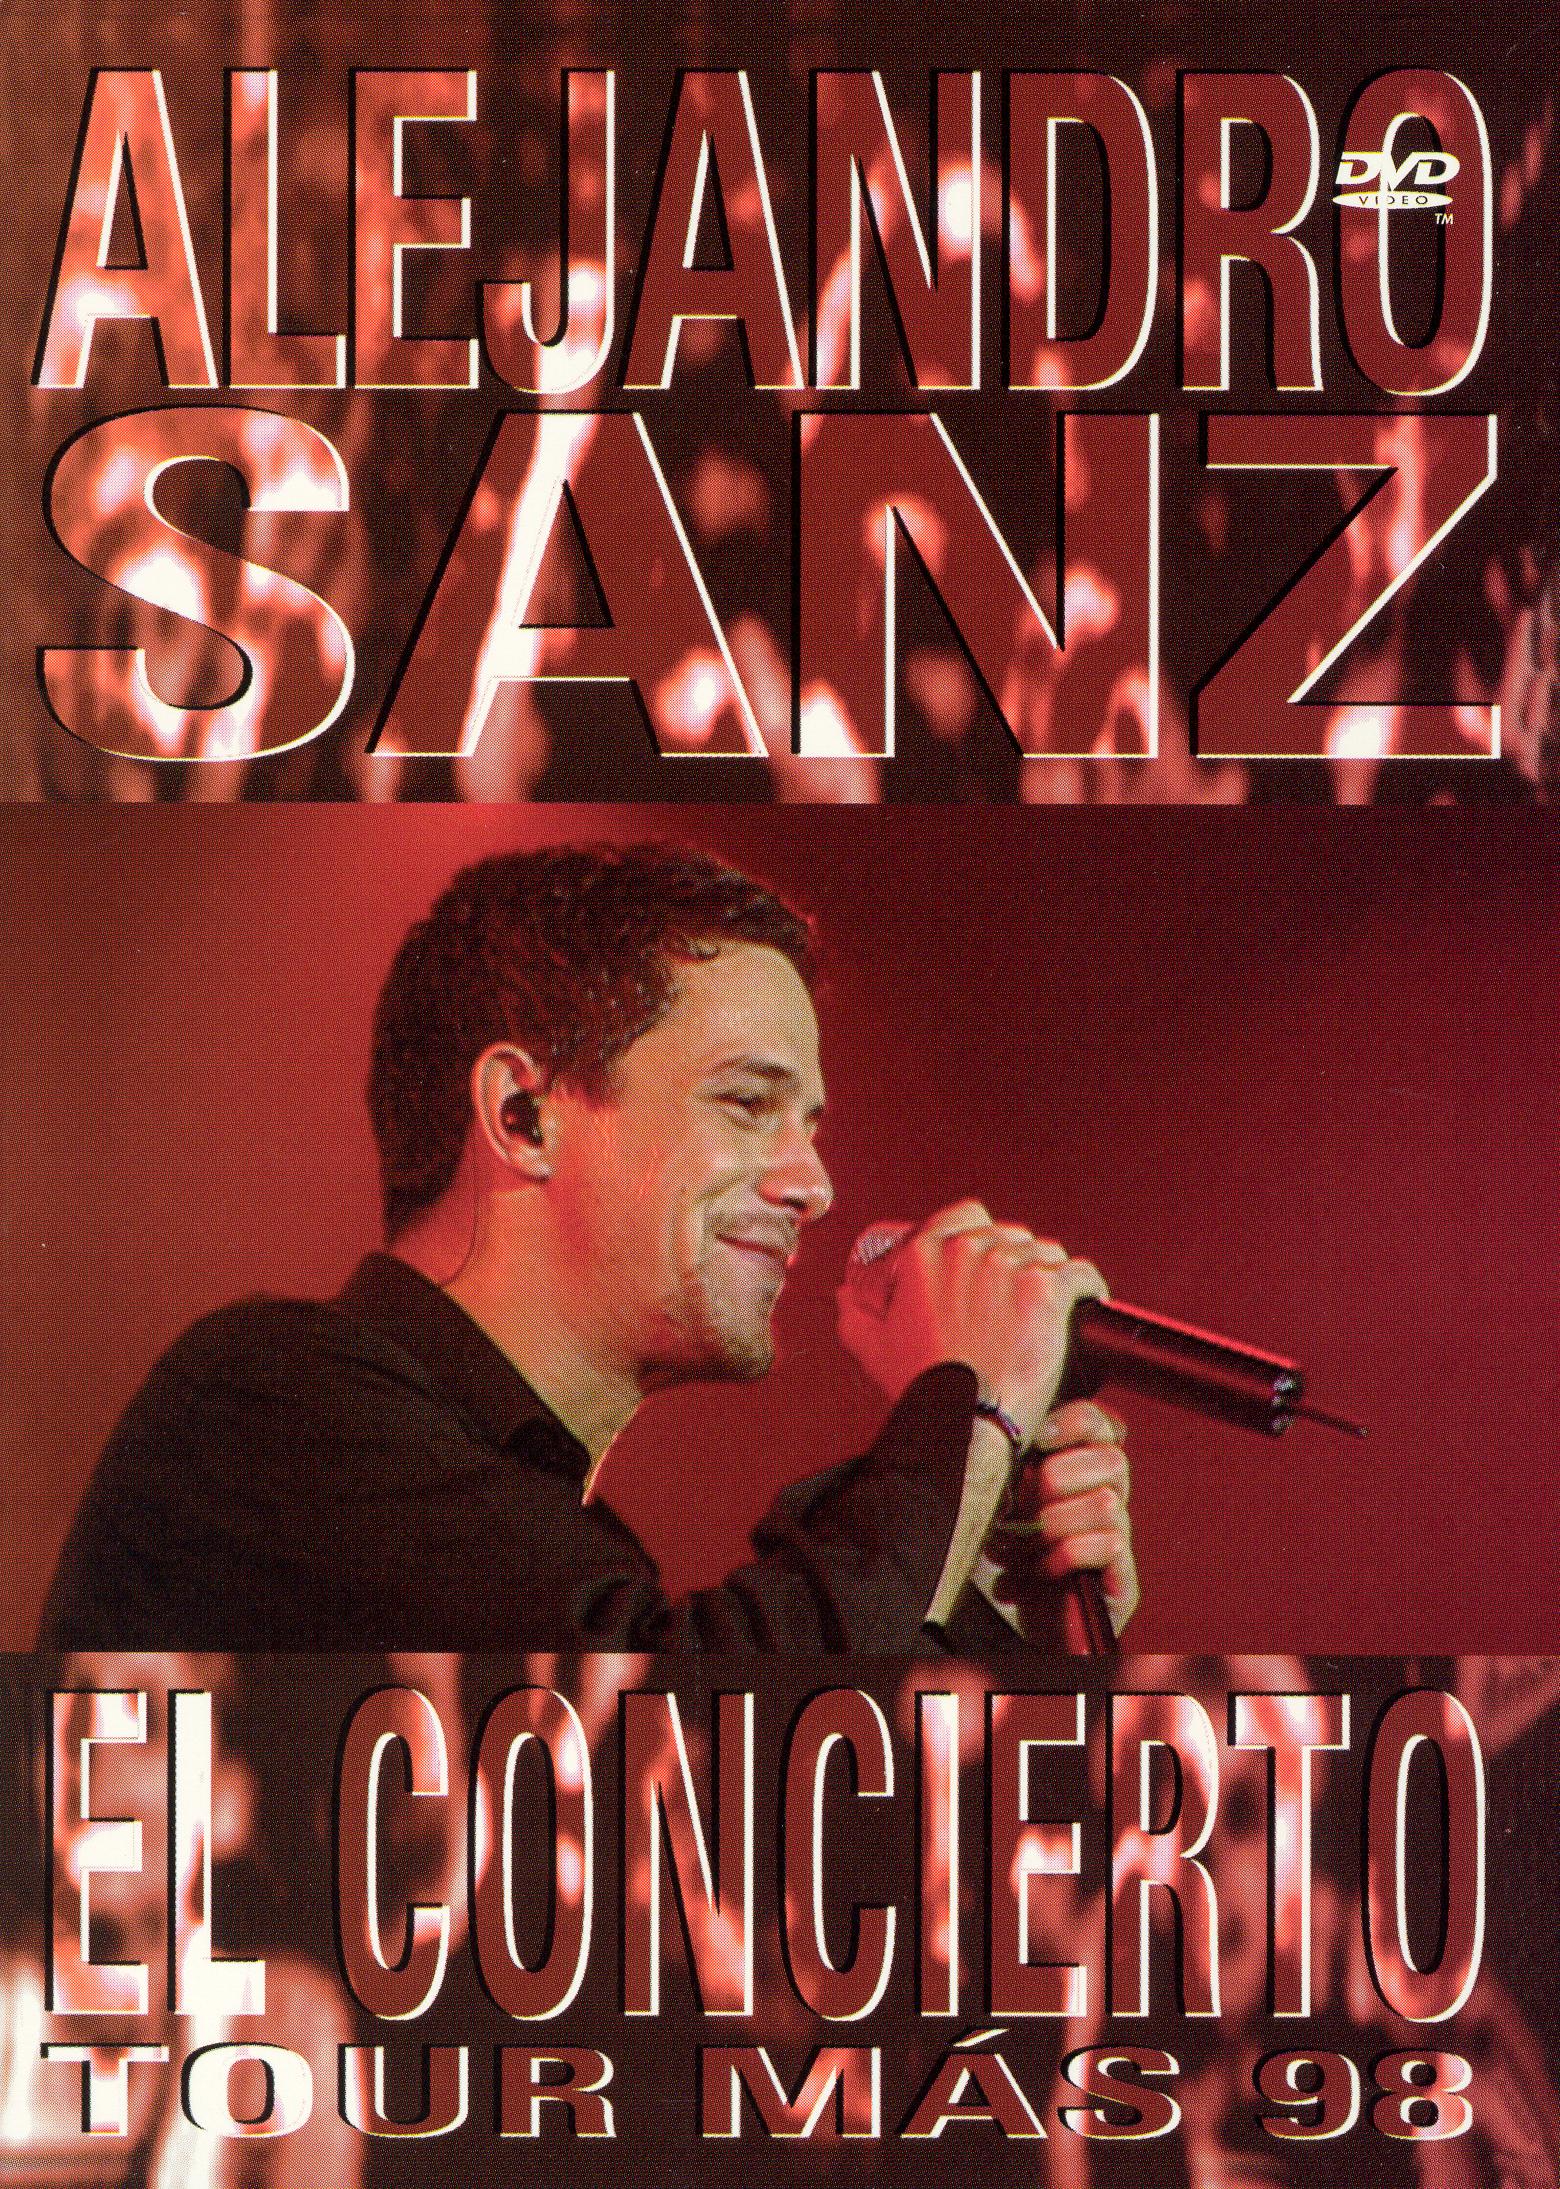 concierto alejandro sanz 2019